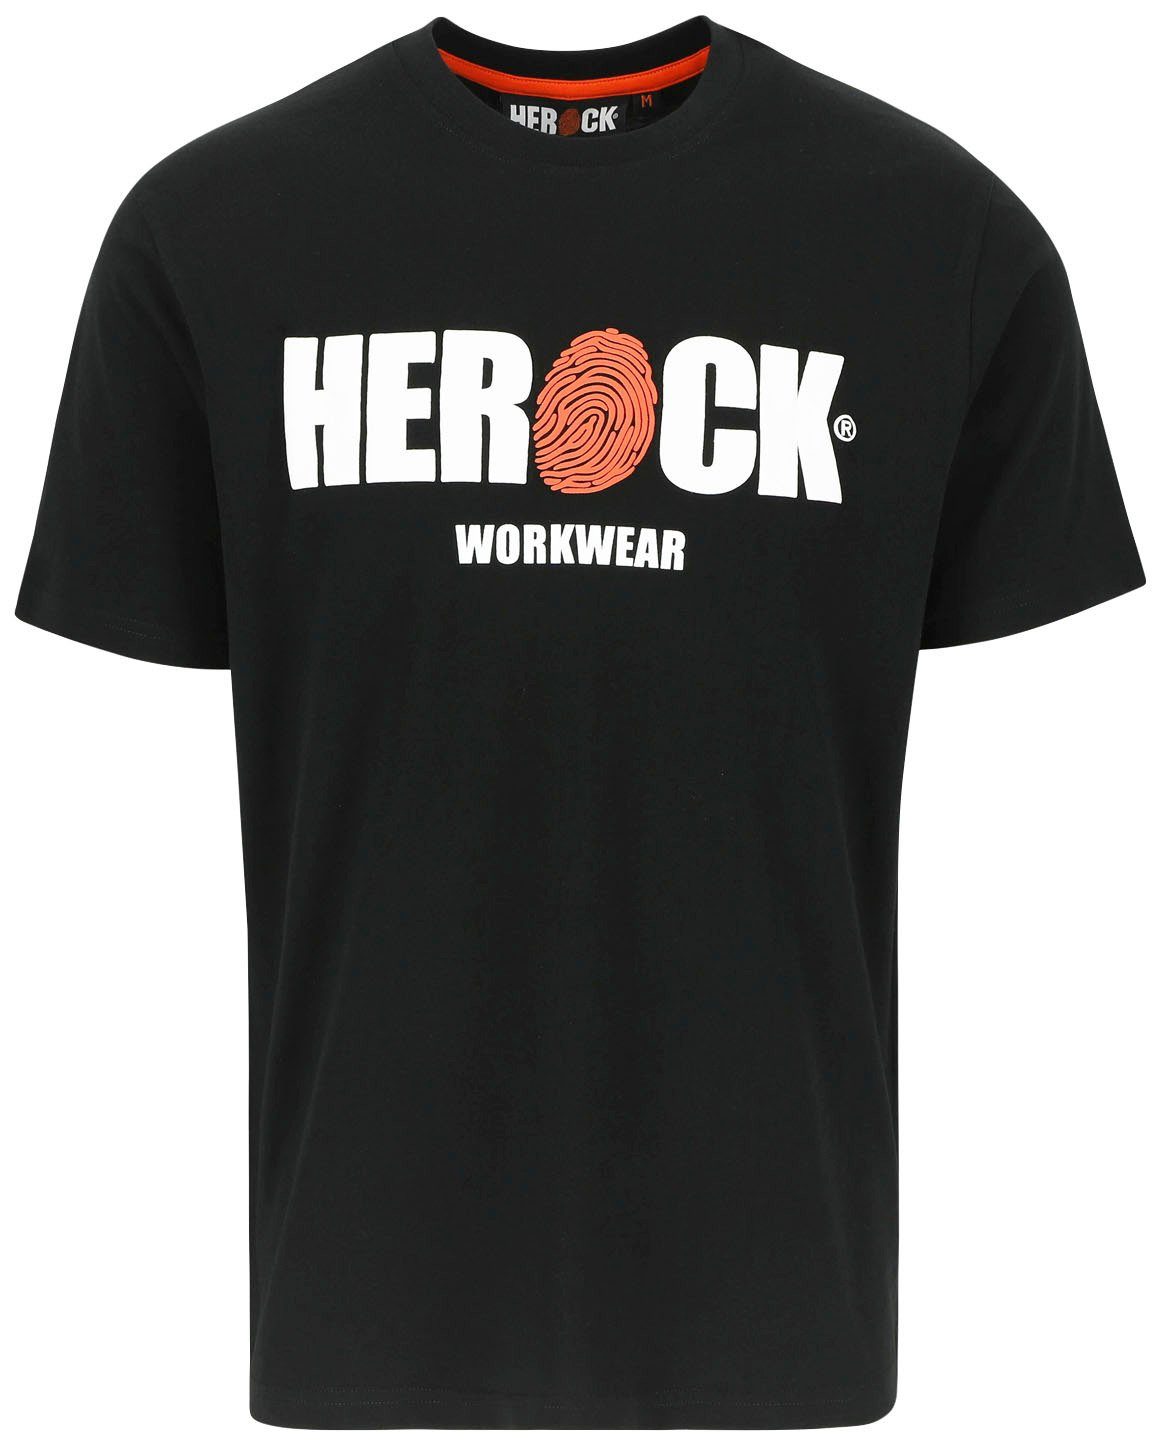 Herock T-Shirt ENI Baumwolle, Rundhals, mit Herock®-Aufdruck, angenehmes Tragegefühl schwarz